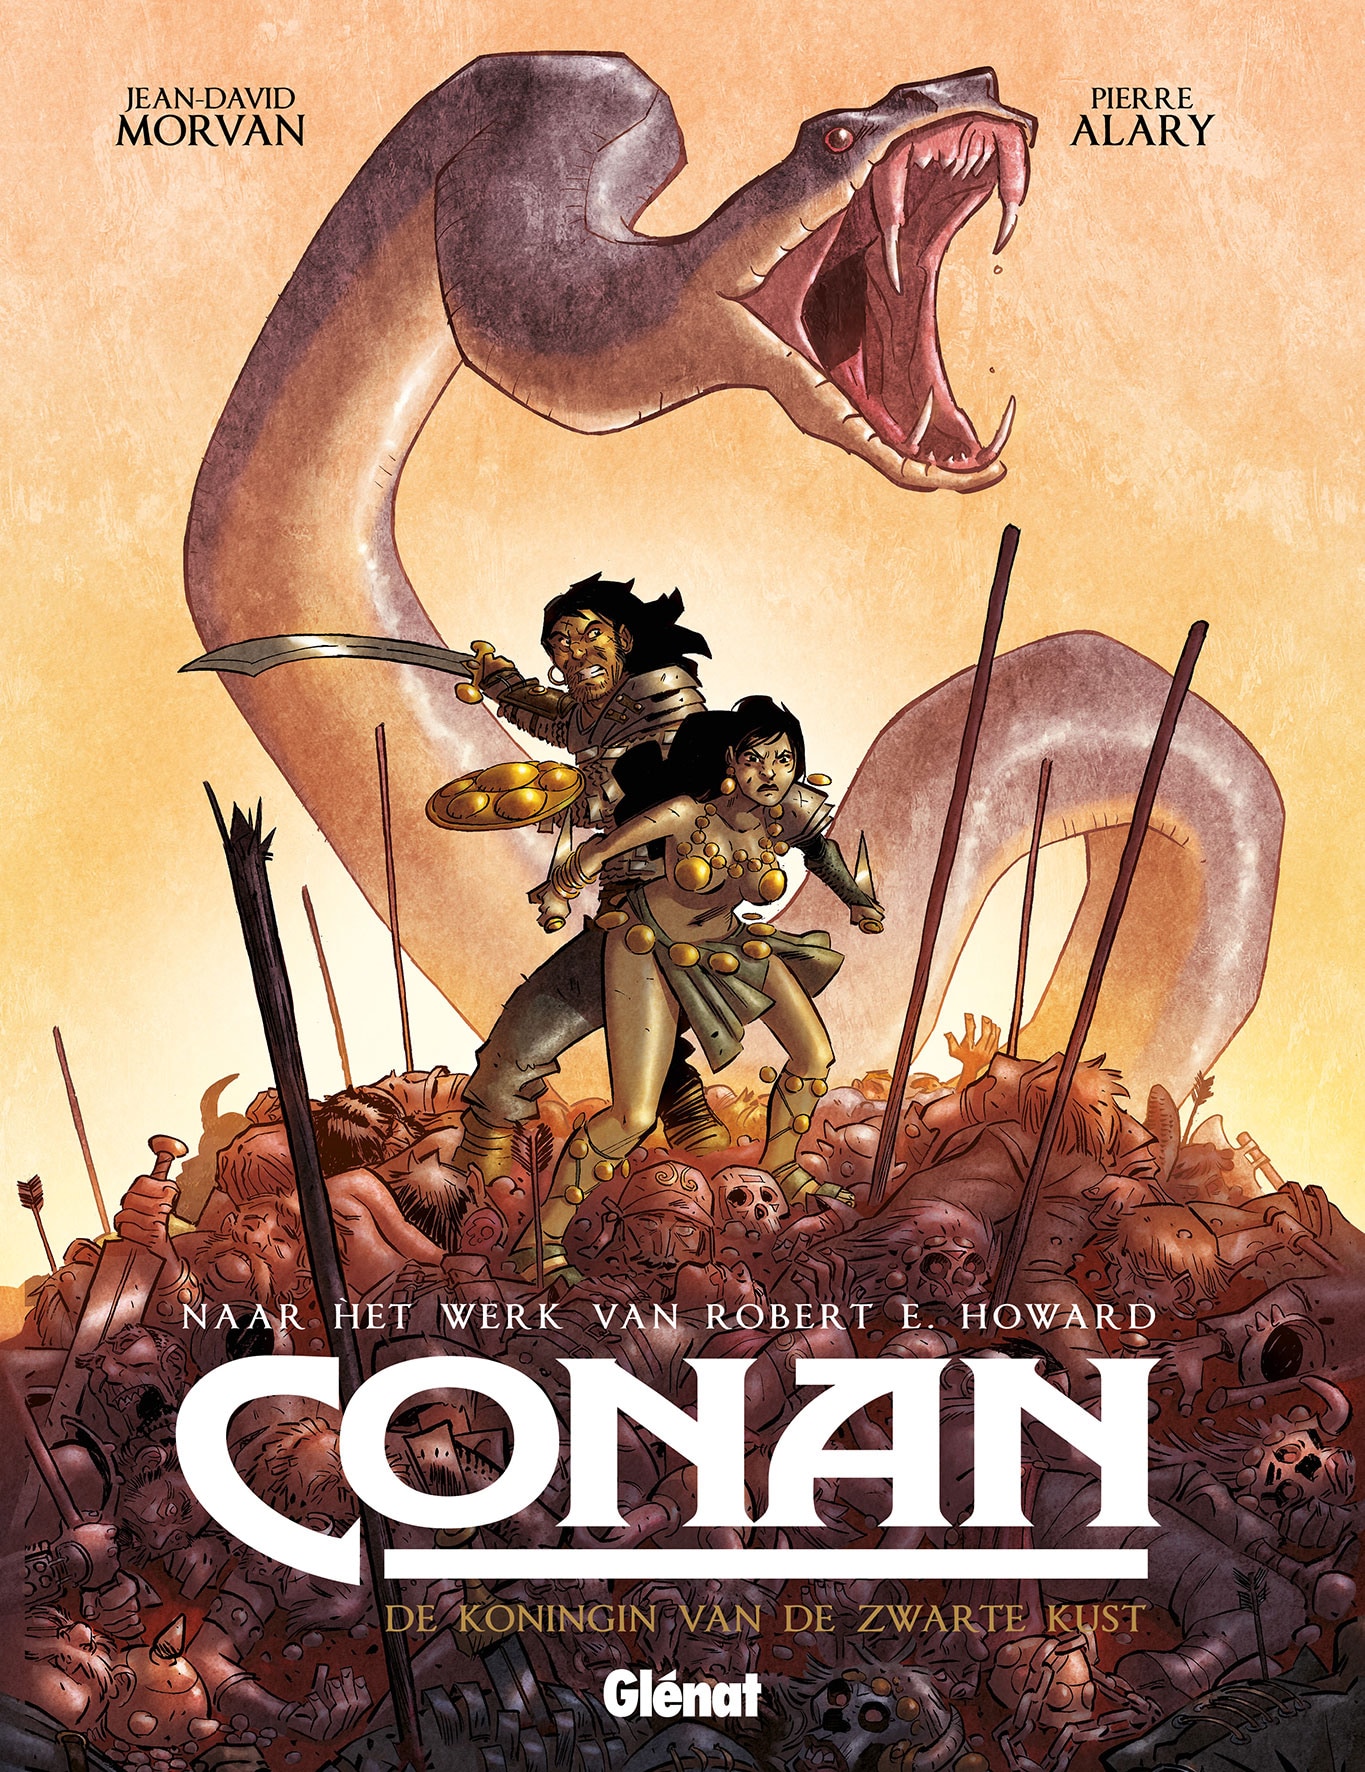 Conan: De koningin van de zwarte kunst ★★☆☆☆